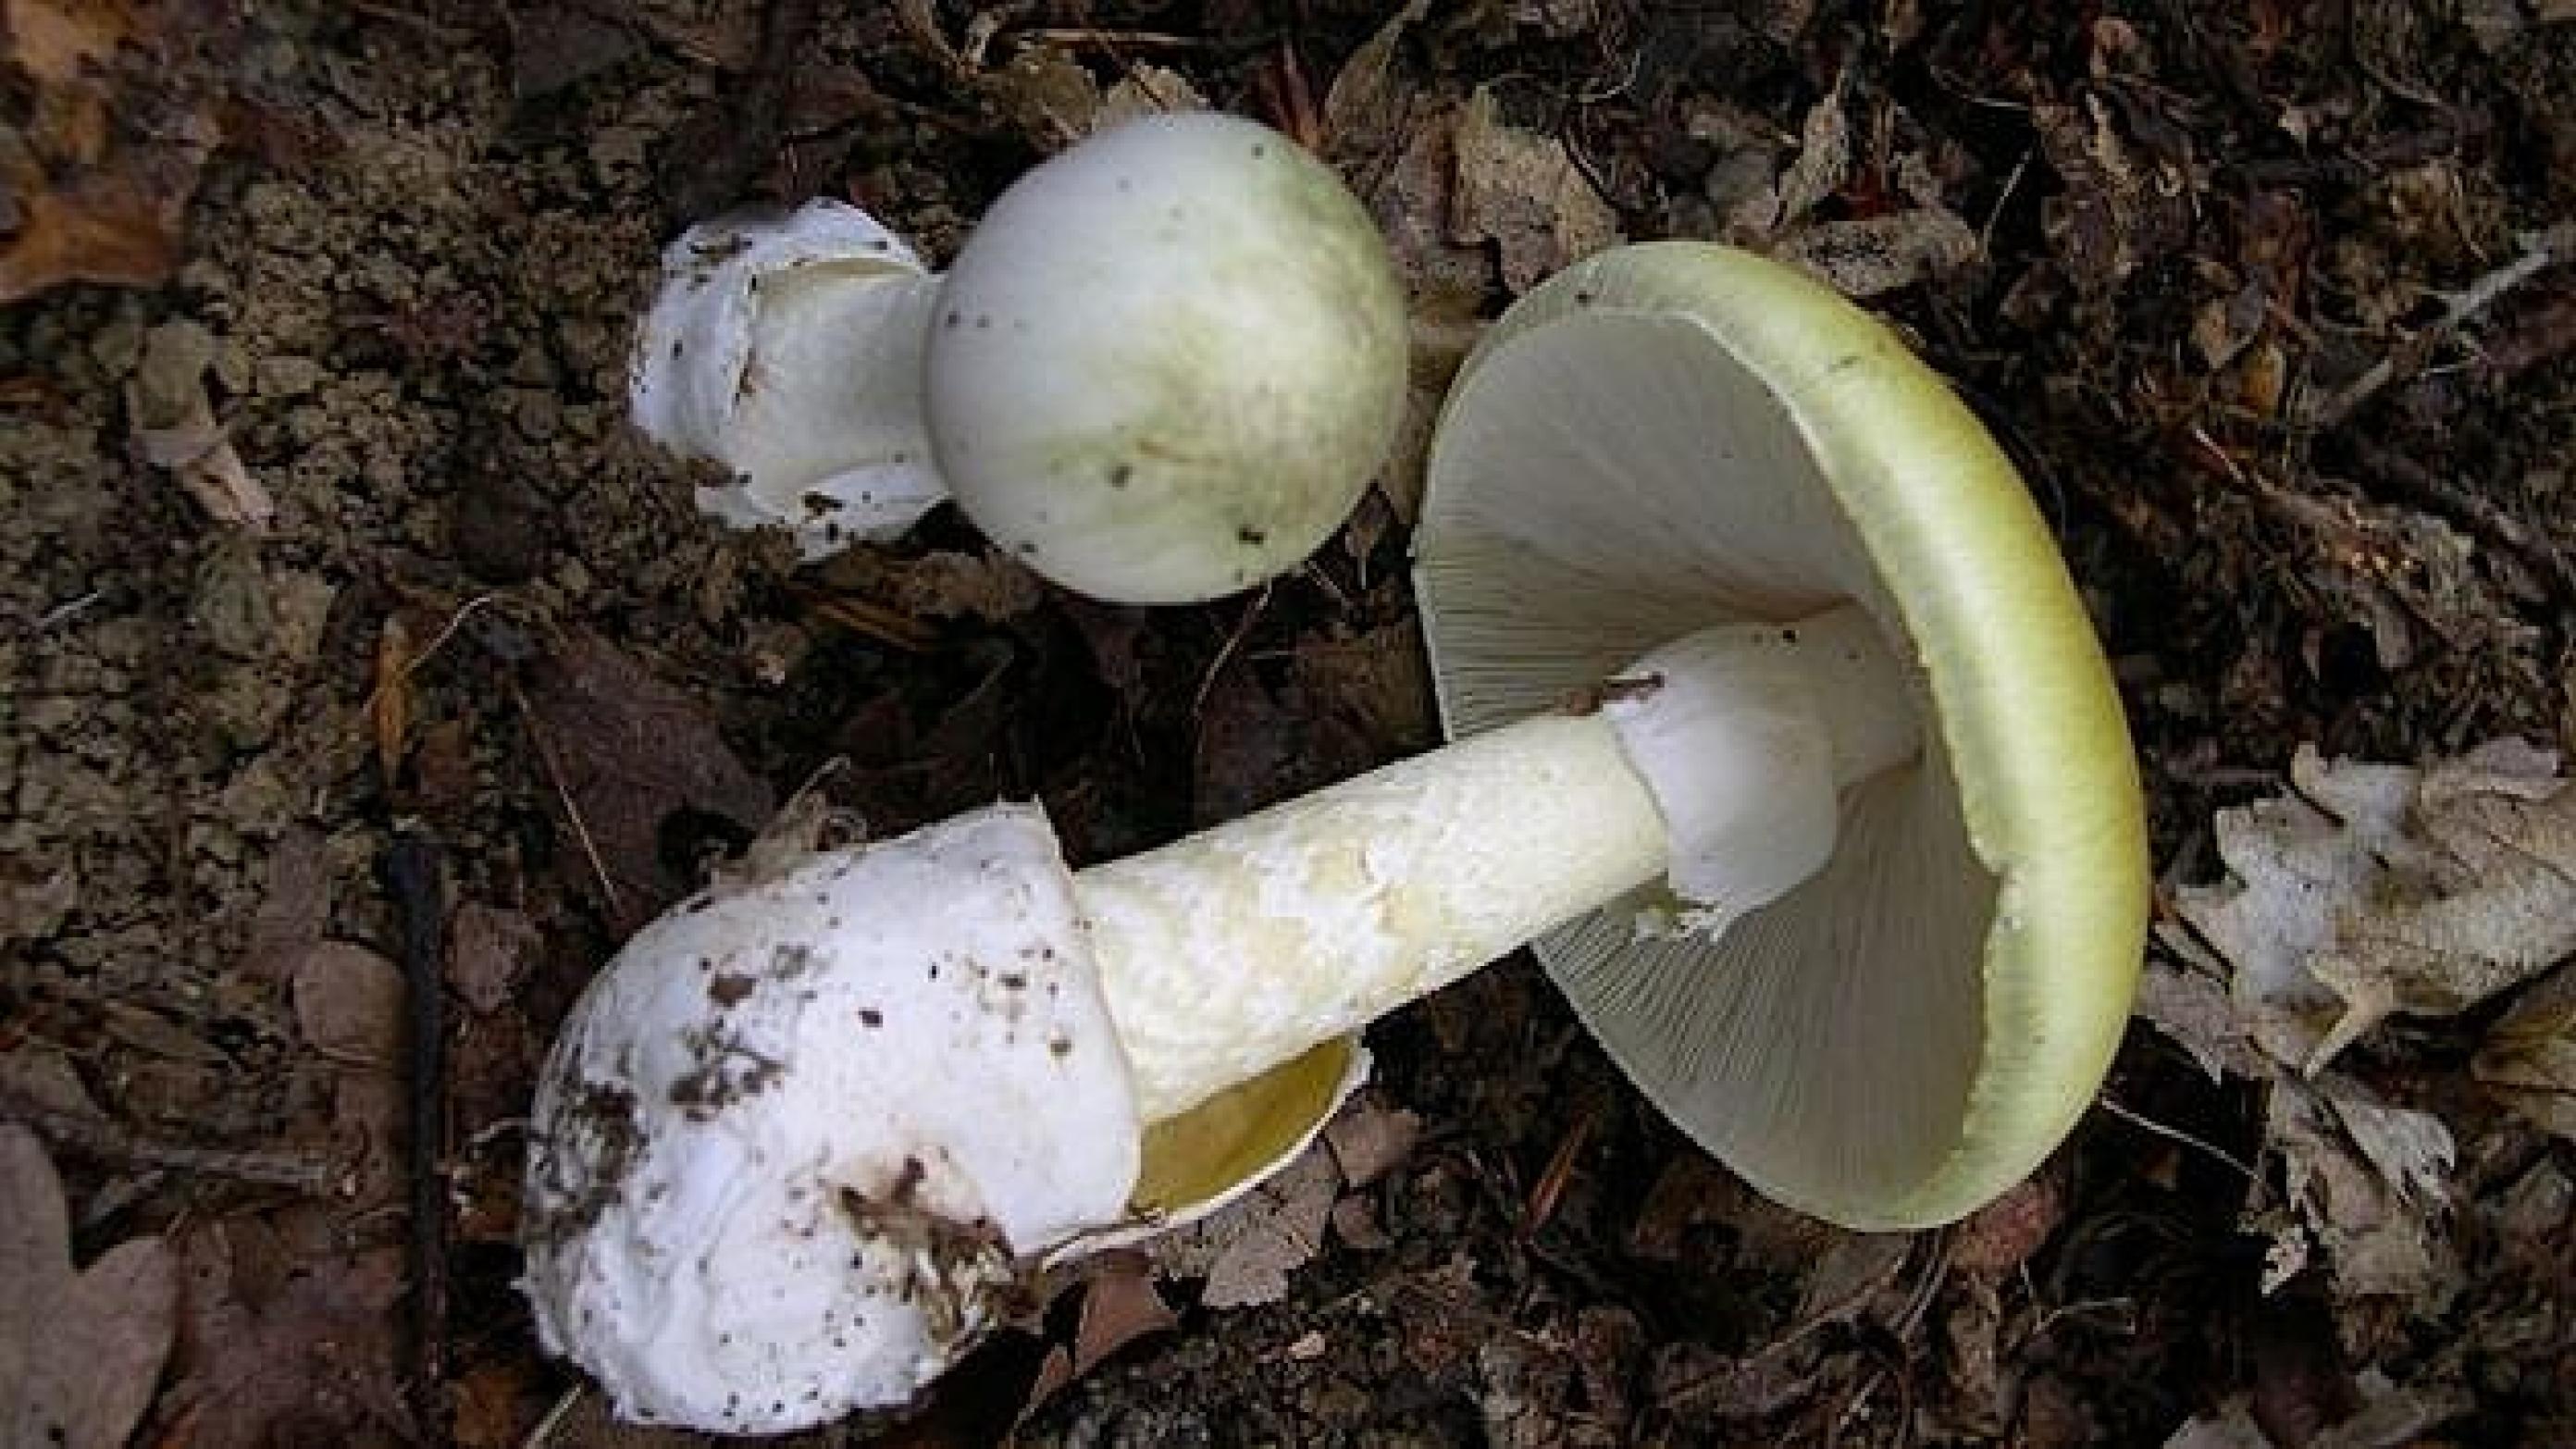 Grøn fluesvamp (Amanita phalloides) er formentlig årsagen til den tragiske svampeulykke i Haslev, mener giftekspert. (Foto: Wikipedia)